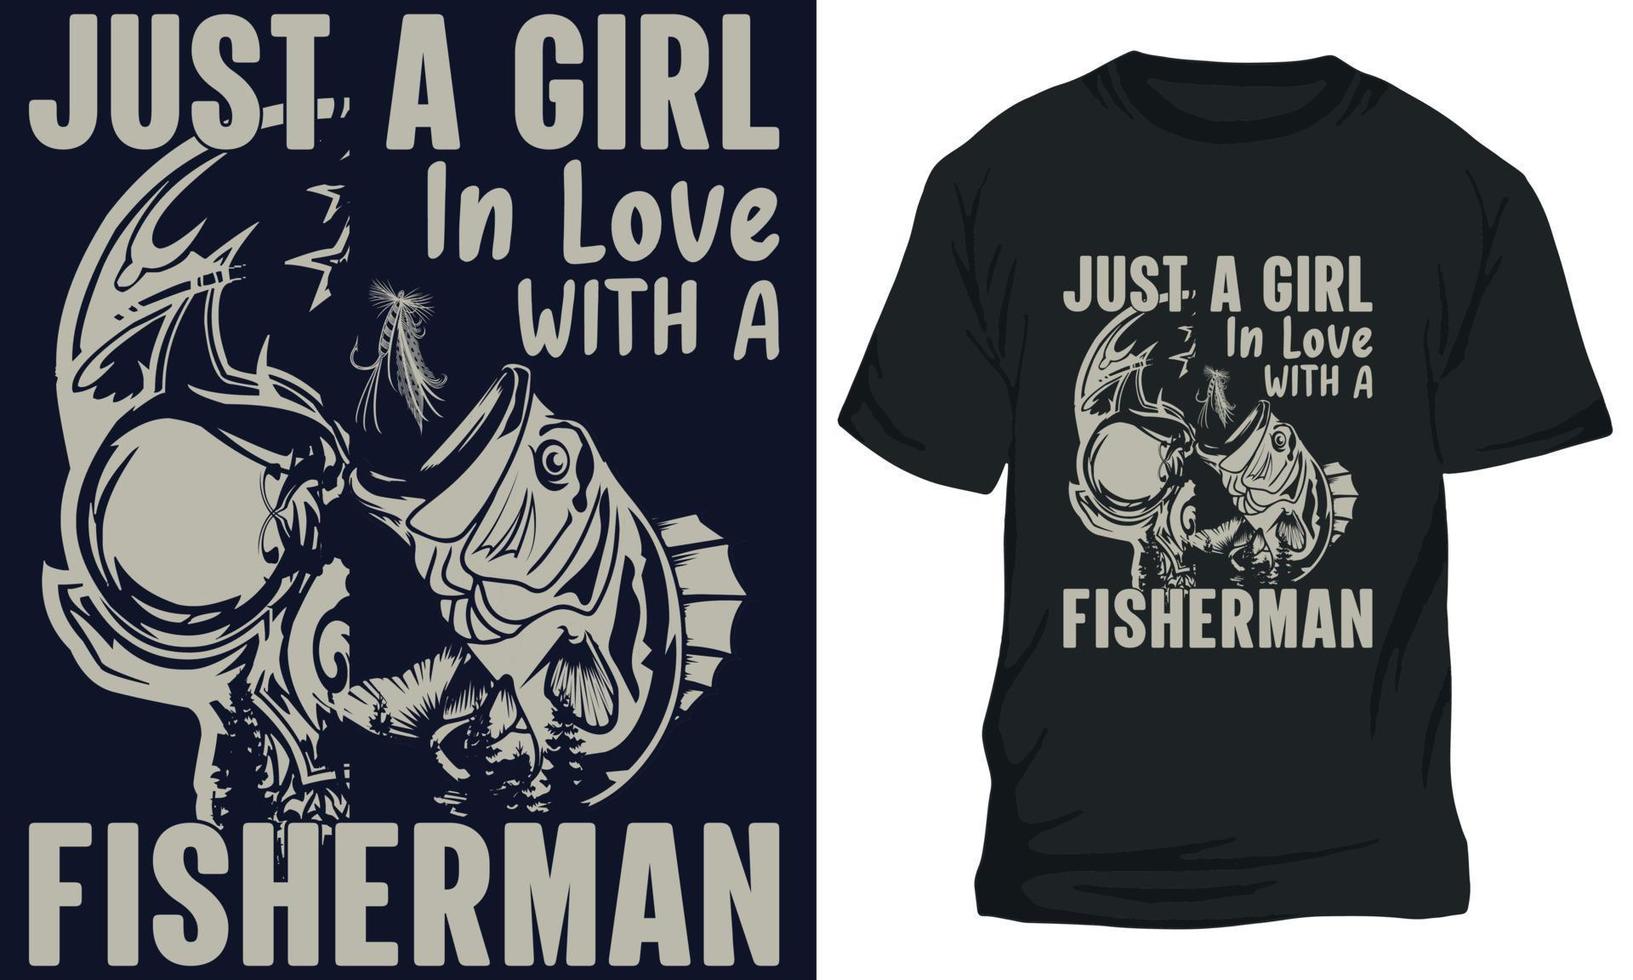 verbazingwekkend visvangst t-shirt ontwerp alleen maar een meisje in liefde met een visser vector